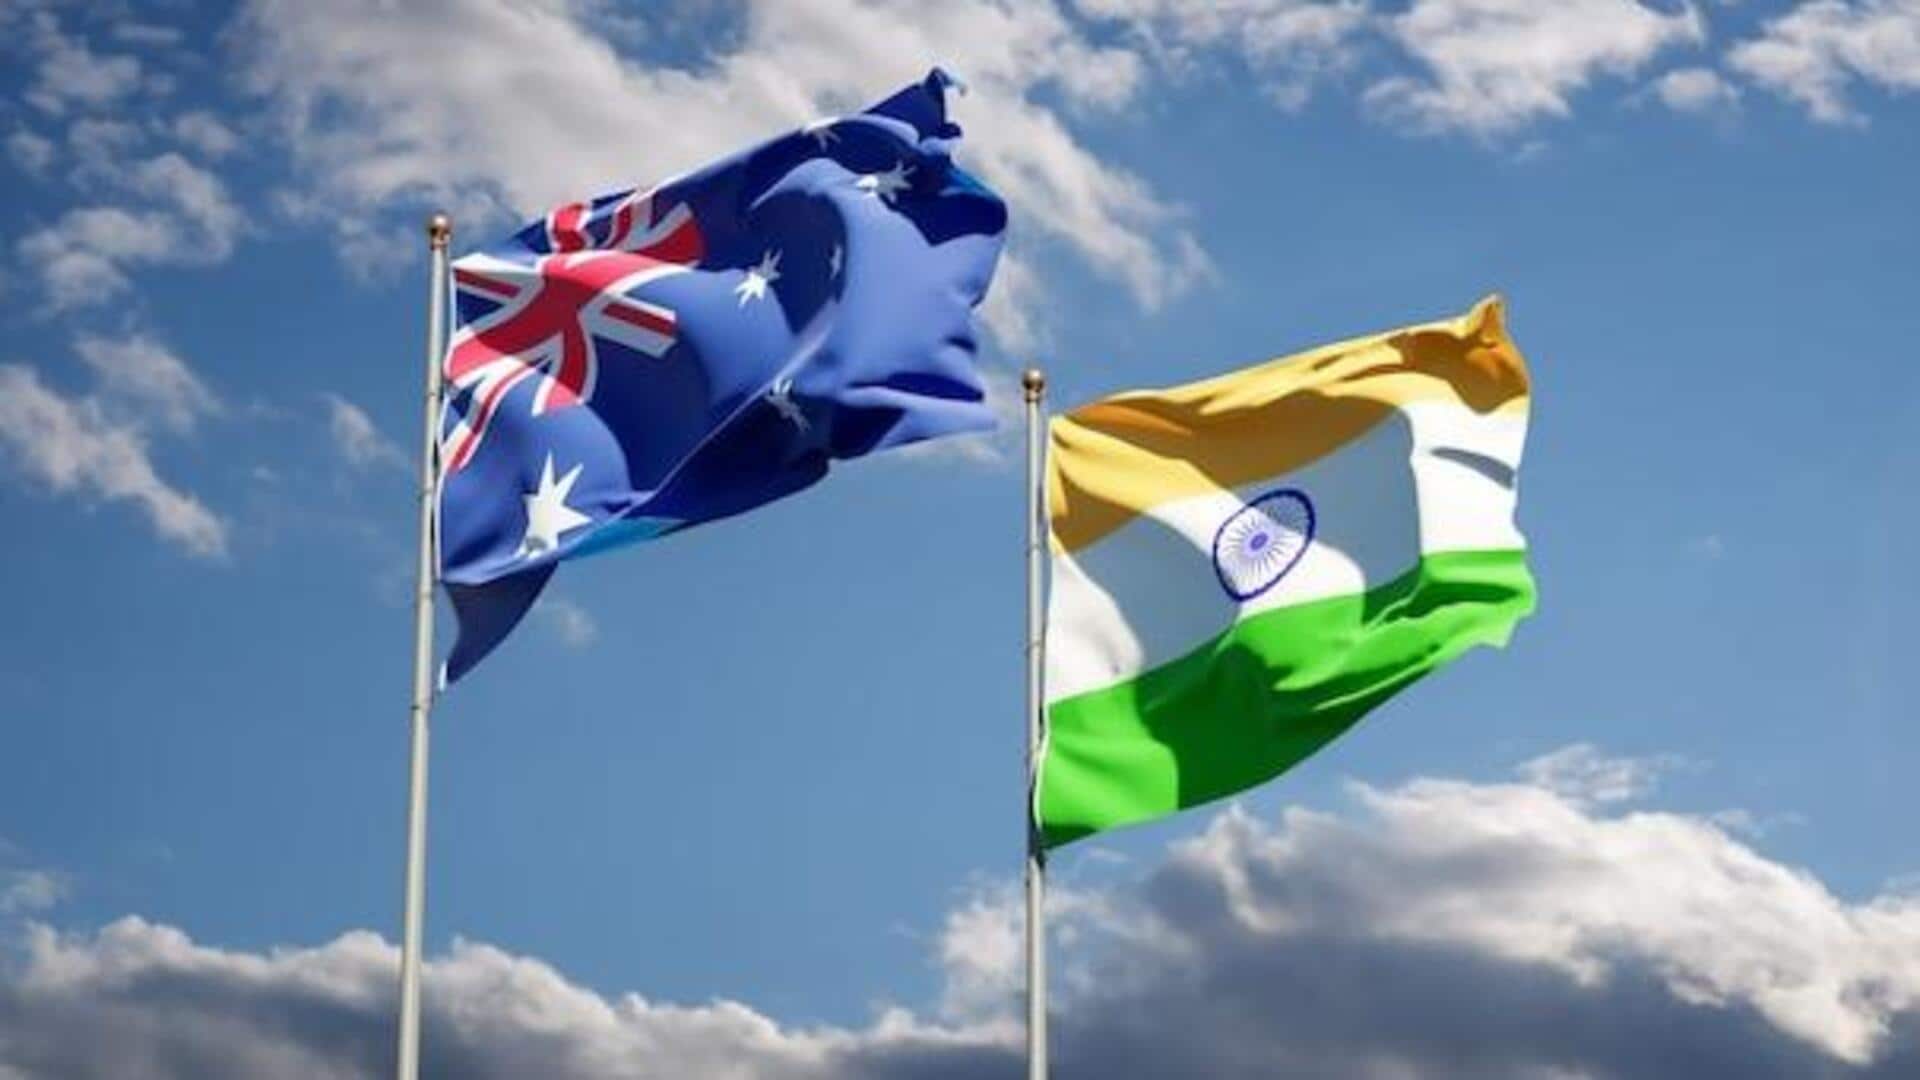 ऑस्ट्रेलिया ने 2020 में भारतीय खुफिया अधिकारियों को देश छोड़ने को कहा था, रिपोर्ट में खुलासा